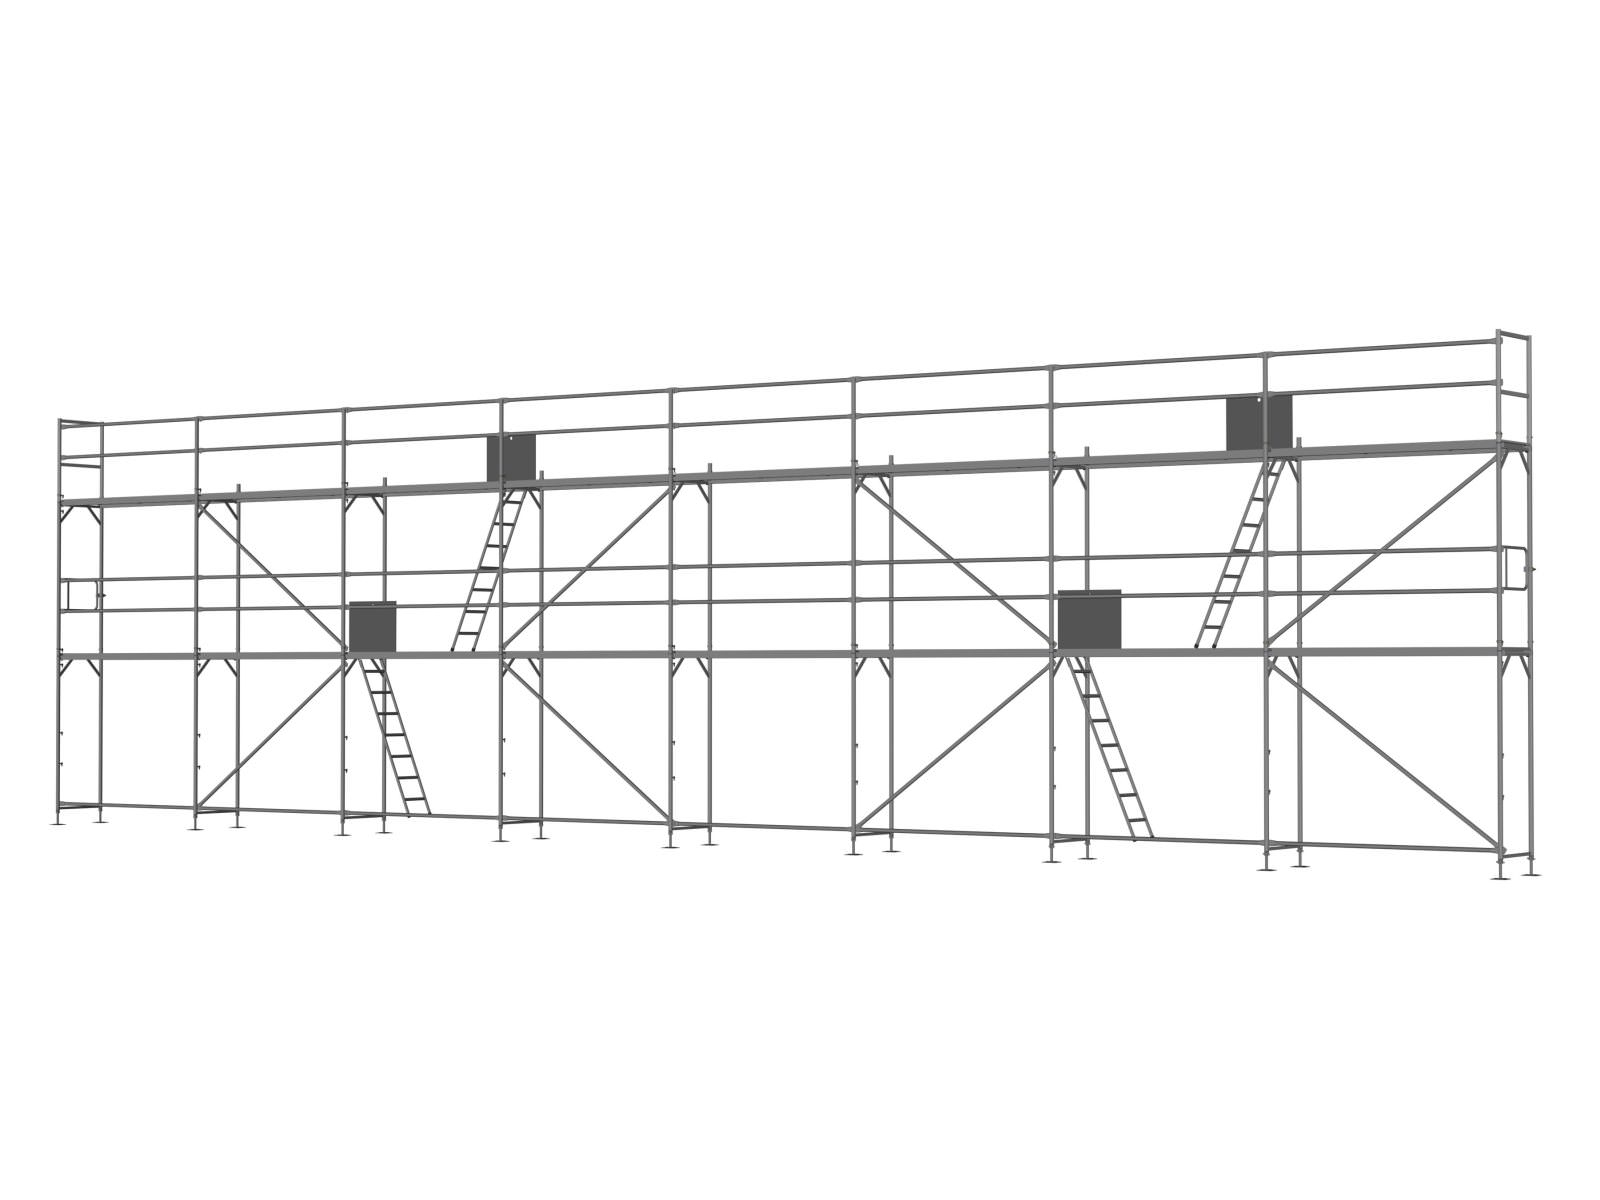 Alu Traufseitengerüst 120 qm - 2,5 m Felder - 20 m lang - 6 m Arbeitshöhe - Basis-Gerüst inkl. Aufstieg & Befestigung